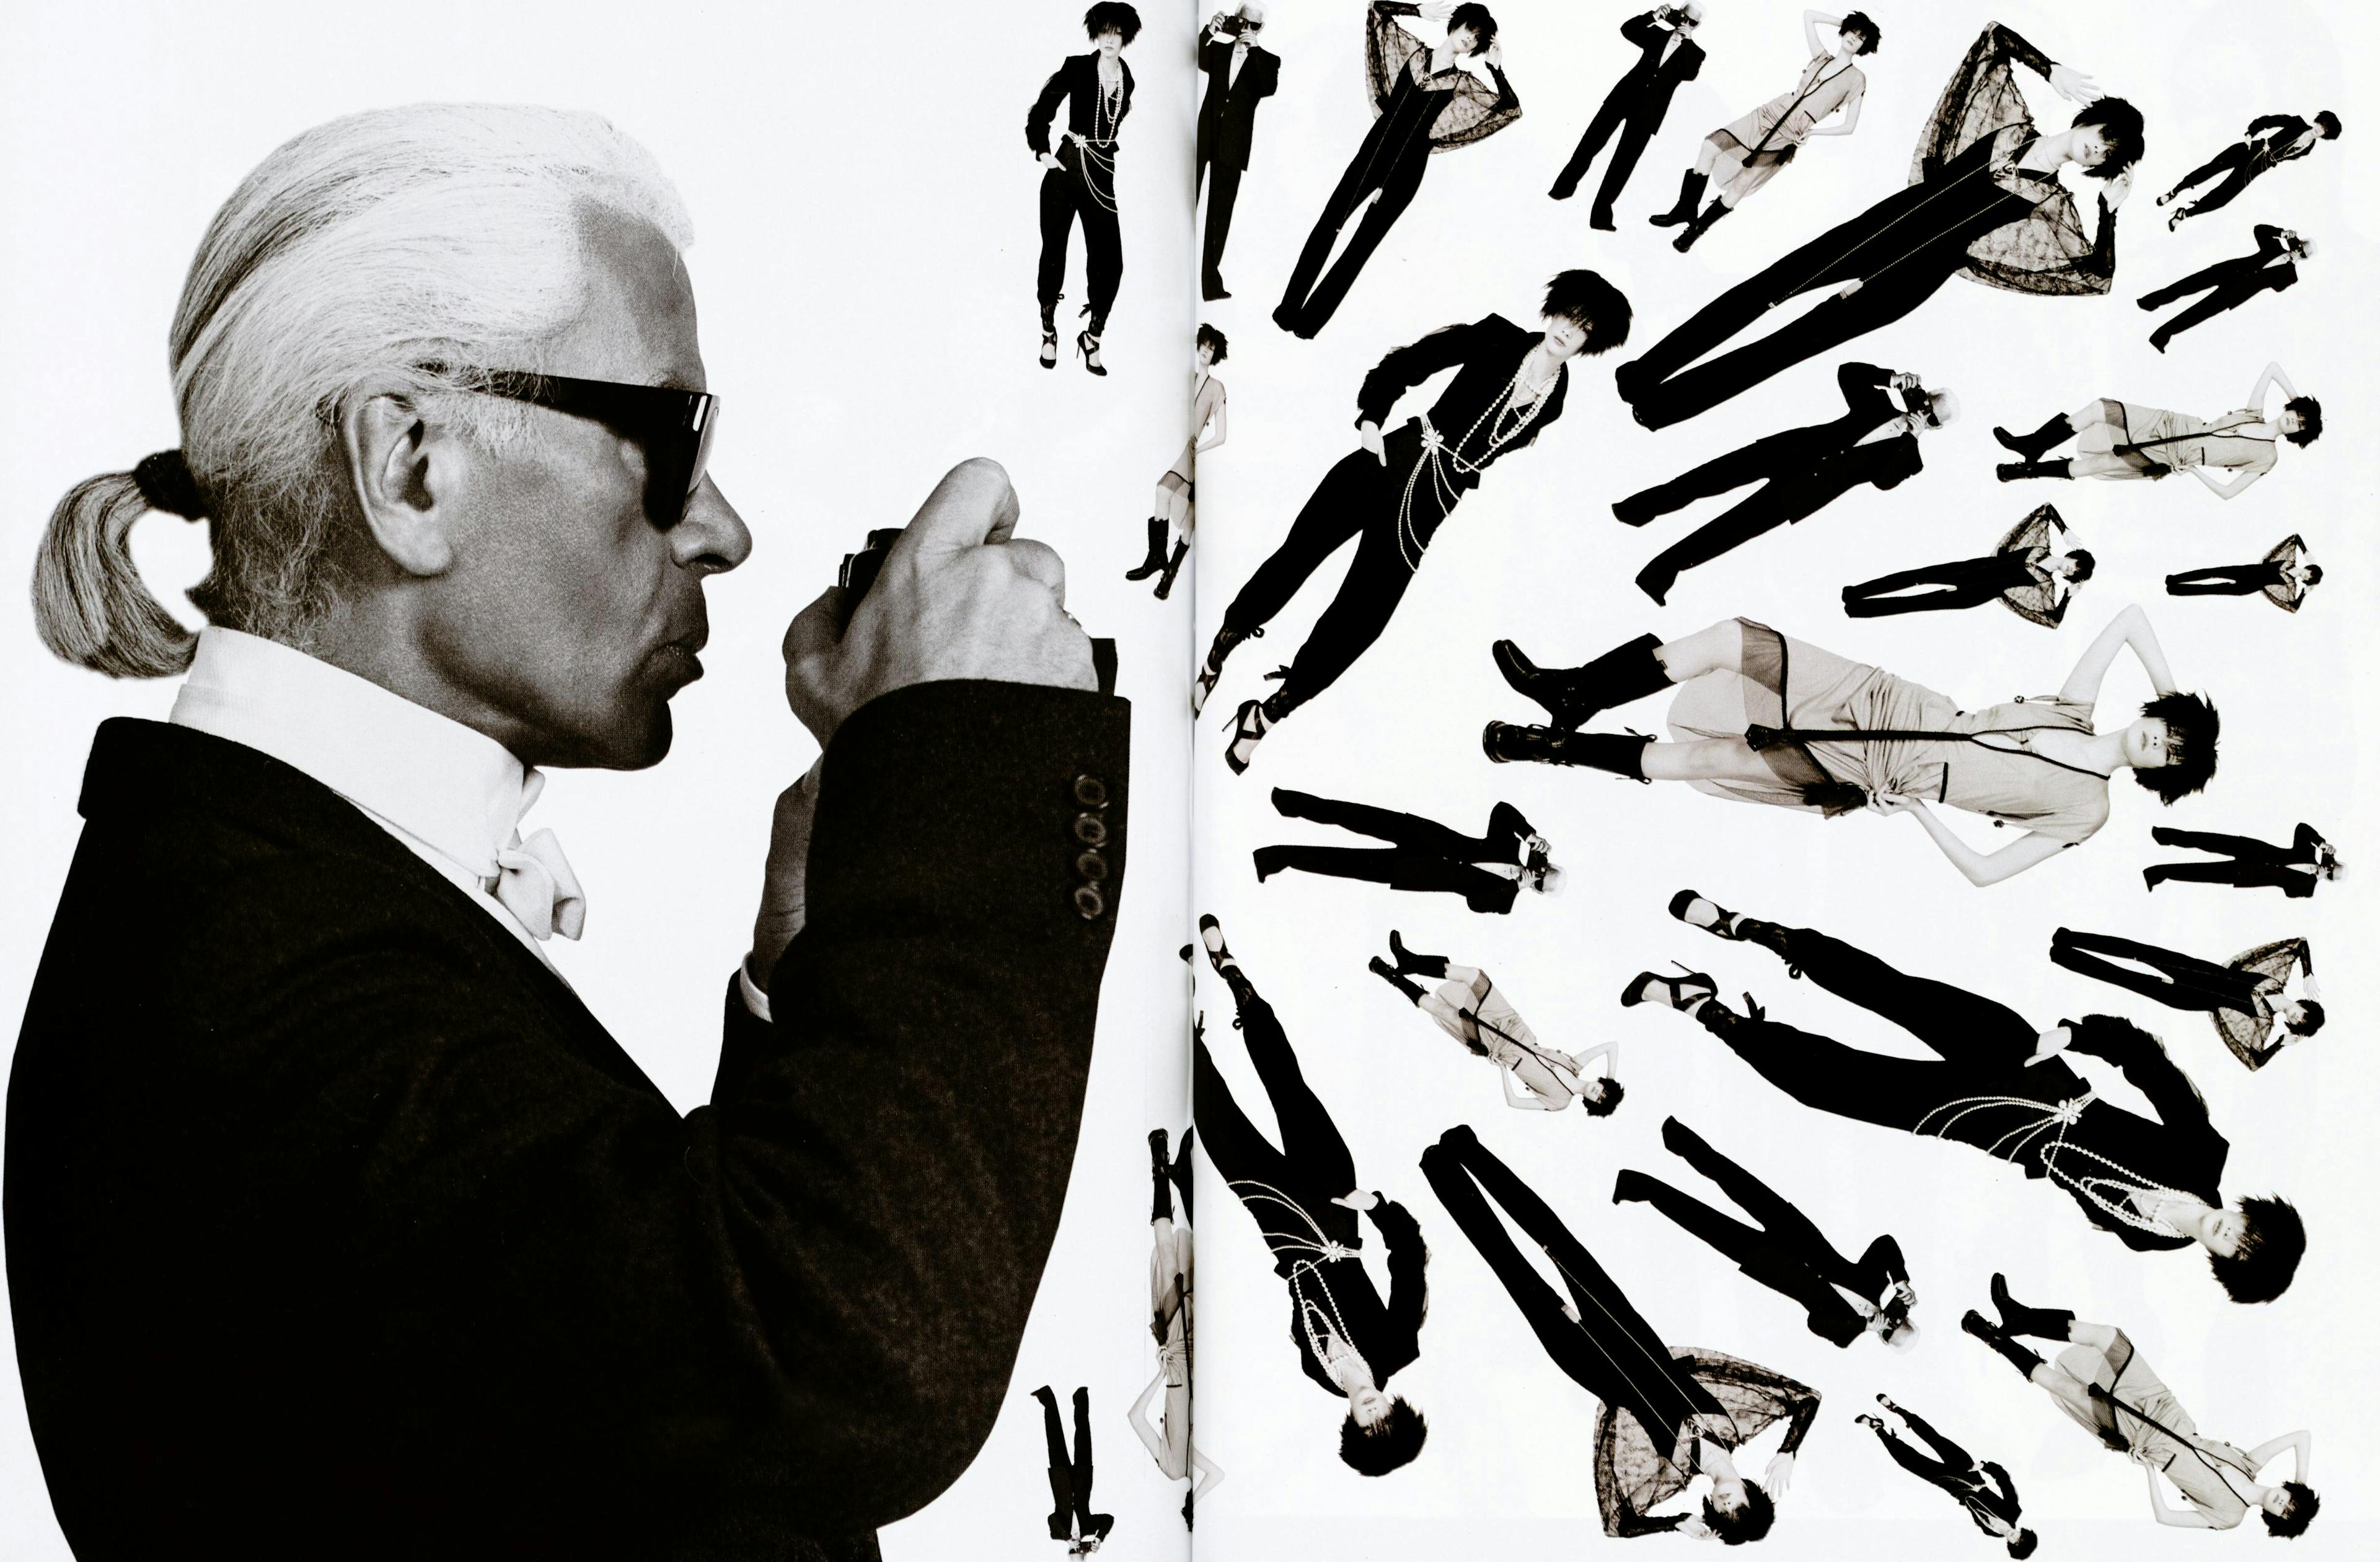 Un'immagine artistica che ritrae Karl Lagerfeld intento a fotografare alcune modelle in posa, L'OFFICIEL n. 861  - 2001 (Archivio L'Officiel)